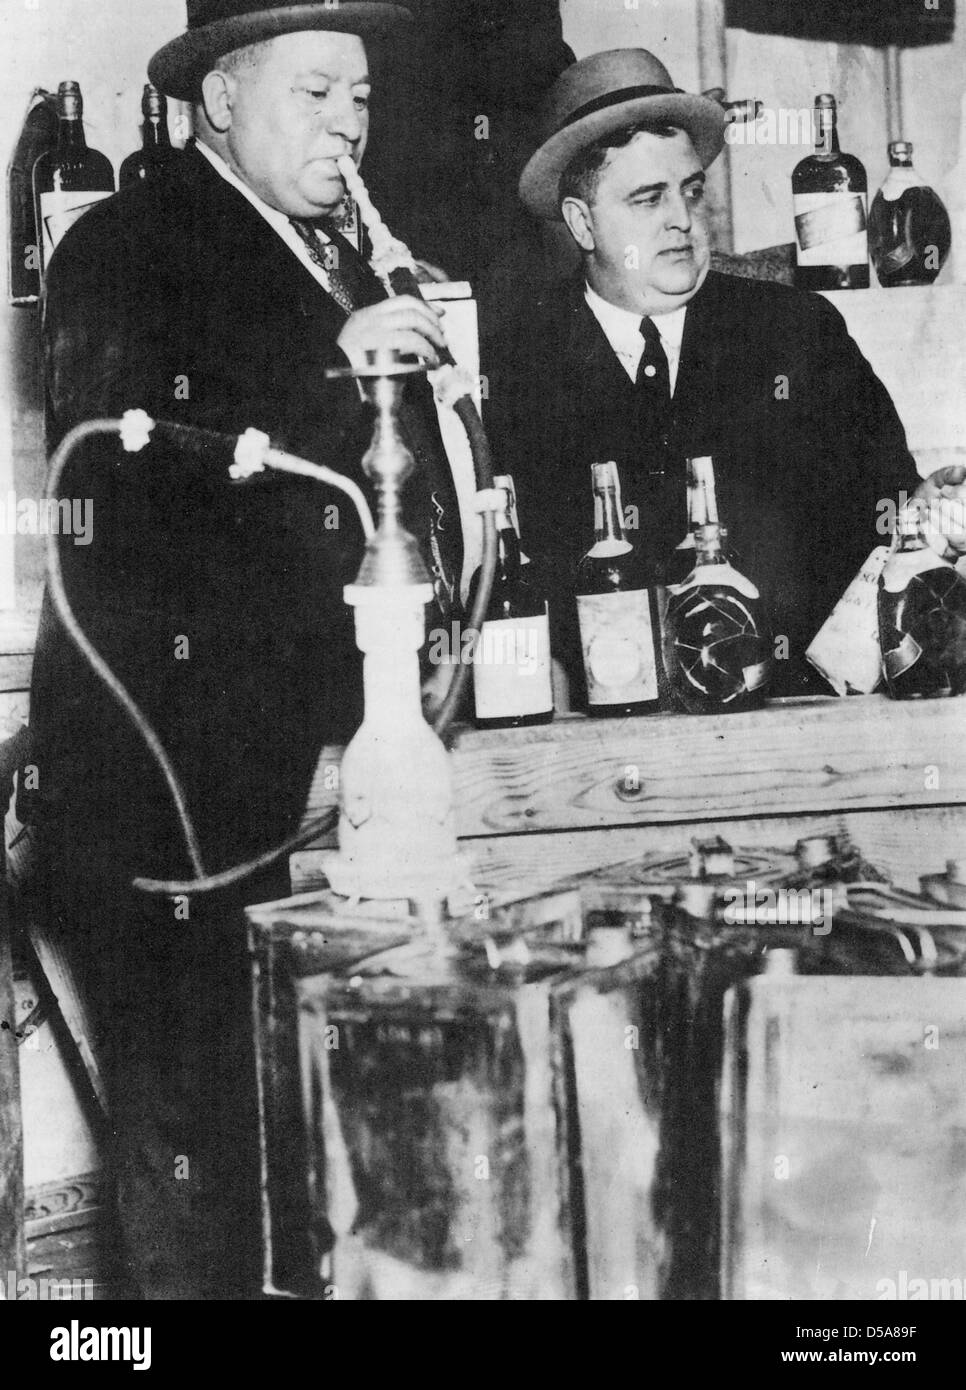 IZZY EINSTEIN (links) und MOE SMITH uns Bundespolizei Offiziere waren die erfolgreichsten Offiziere während der Prohibition 1920-25. Stockfoto